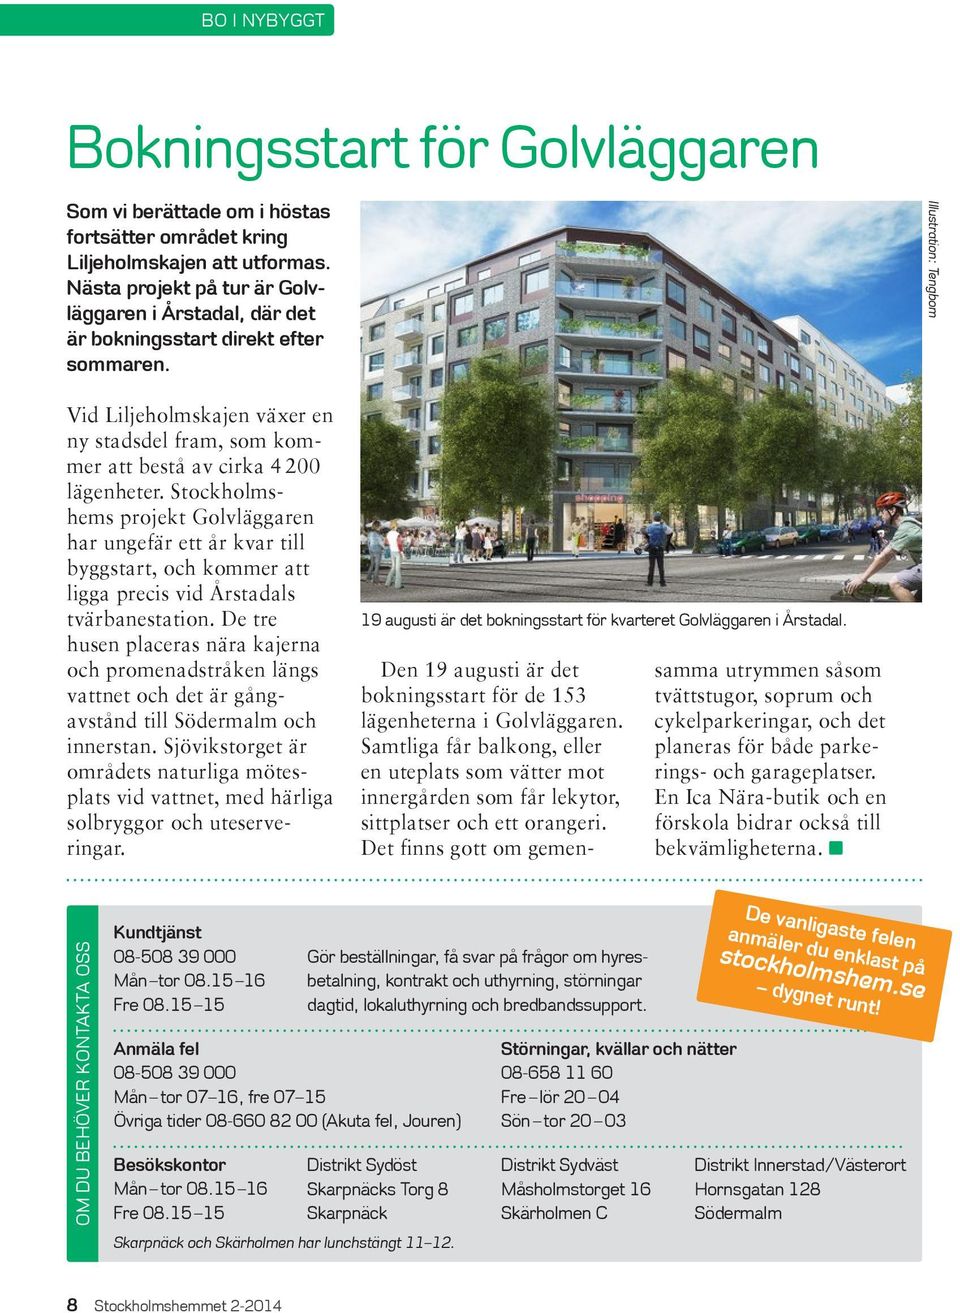 Illustration: Tengbom Vid Liljeholmskajen växer en ny stadsdel fram, som kommer att bestå av cirka 4 200 lägenheter.